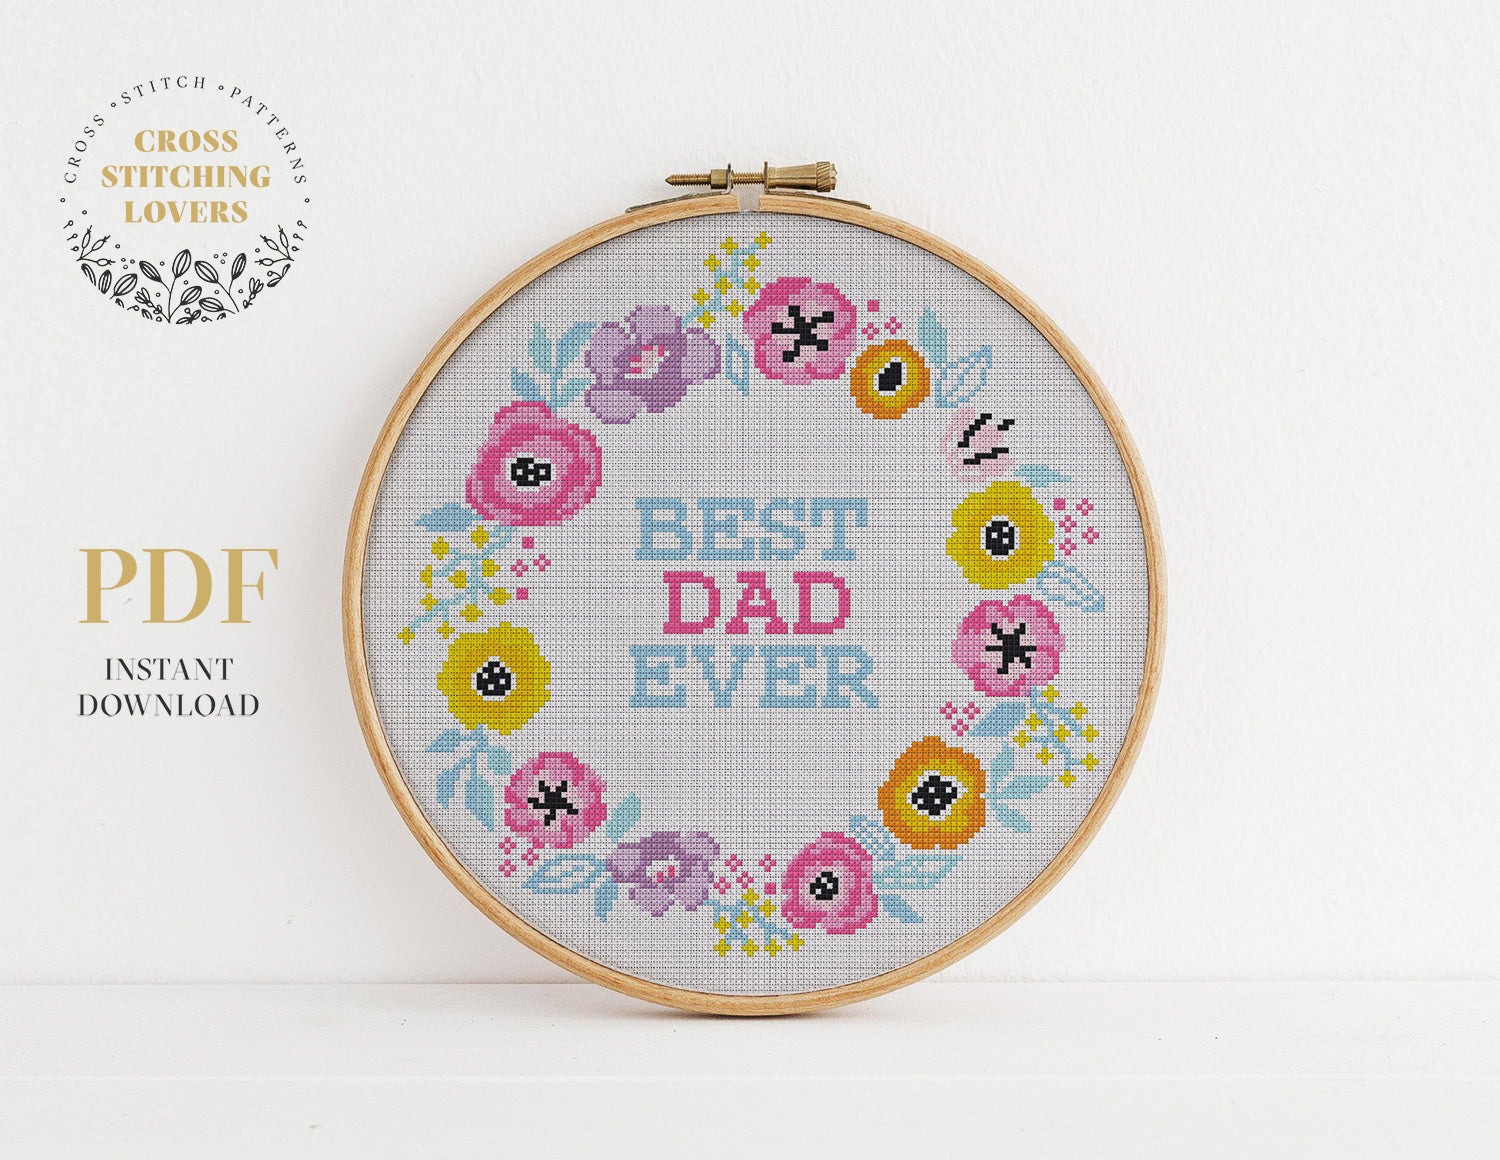 Best Dad Ever - Cross stitch pattern